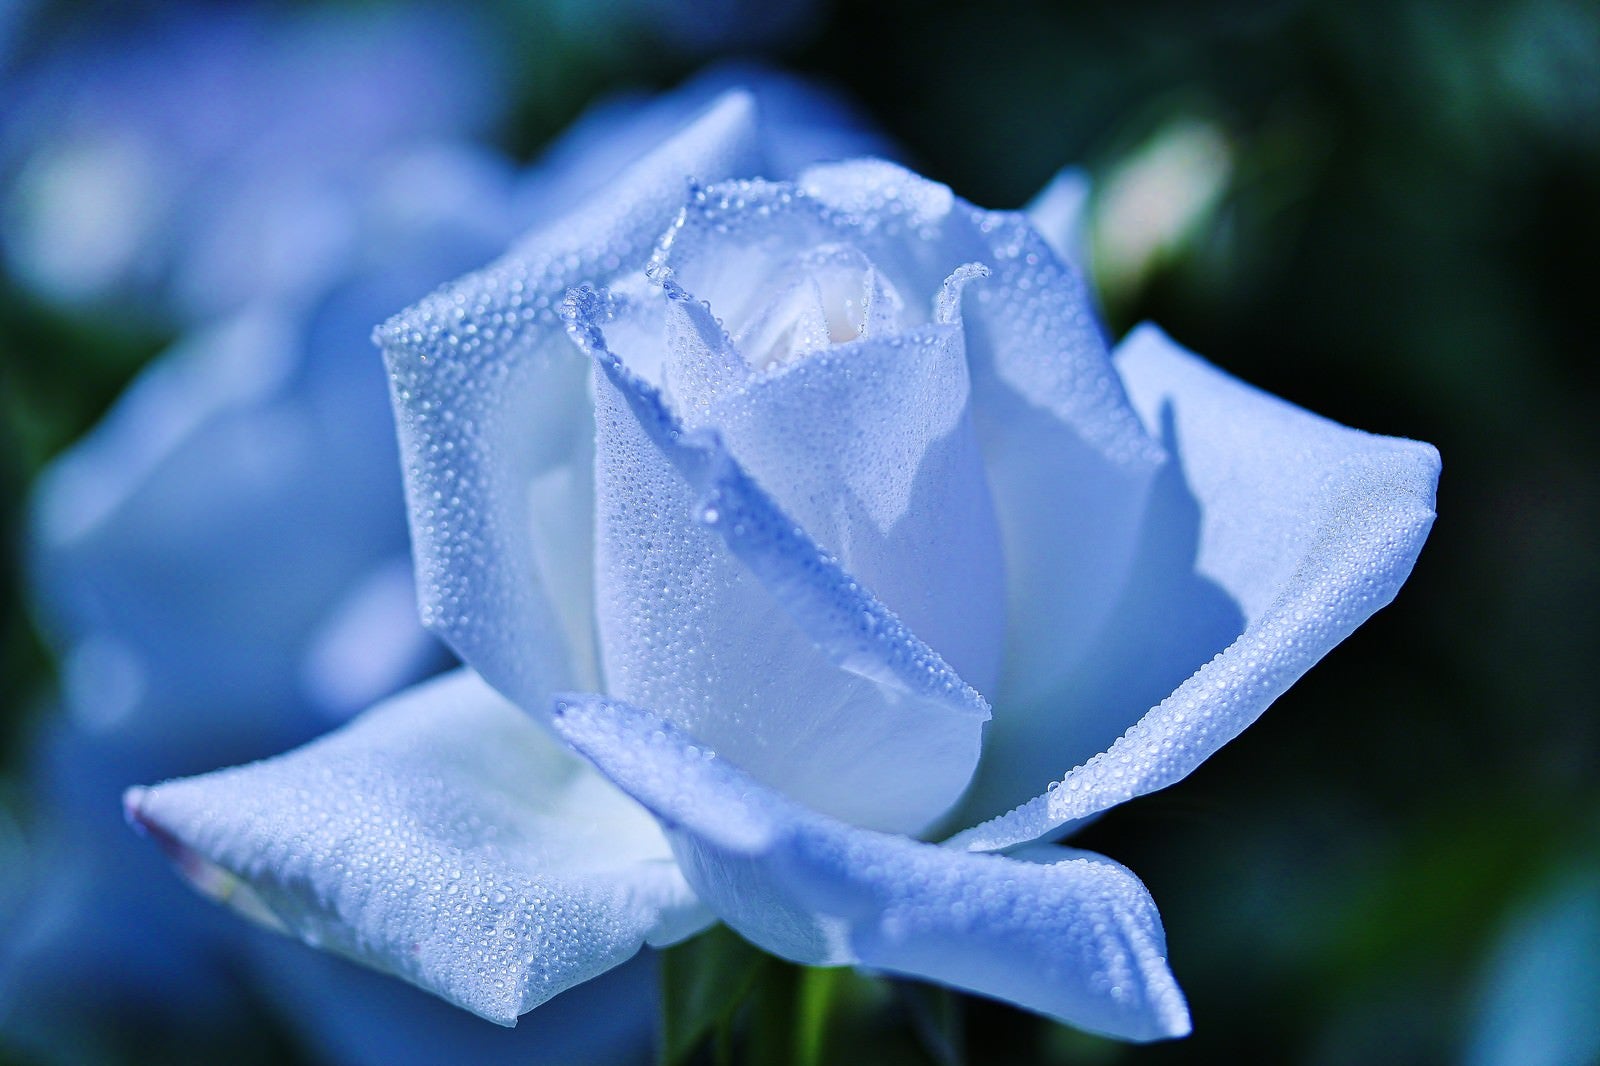 「朝露に濡れた白い薔薇」の写真